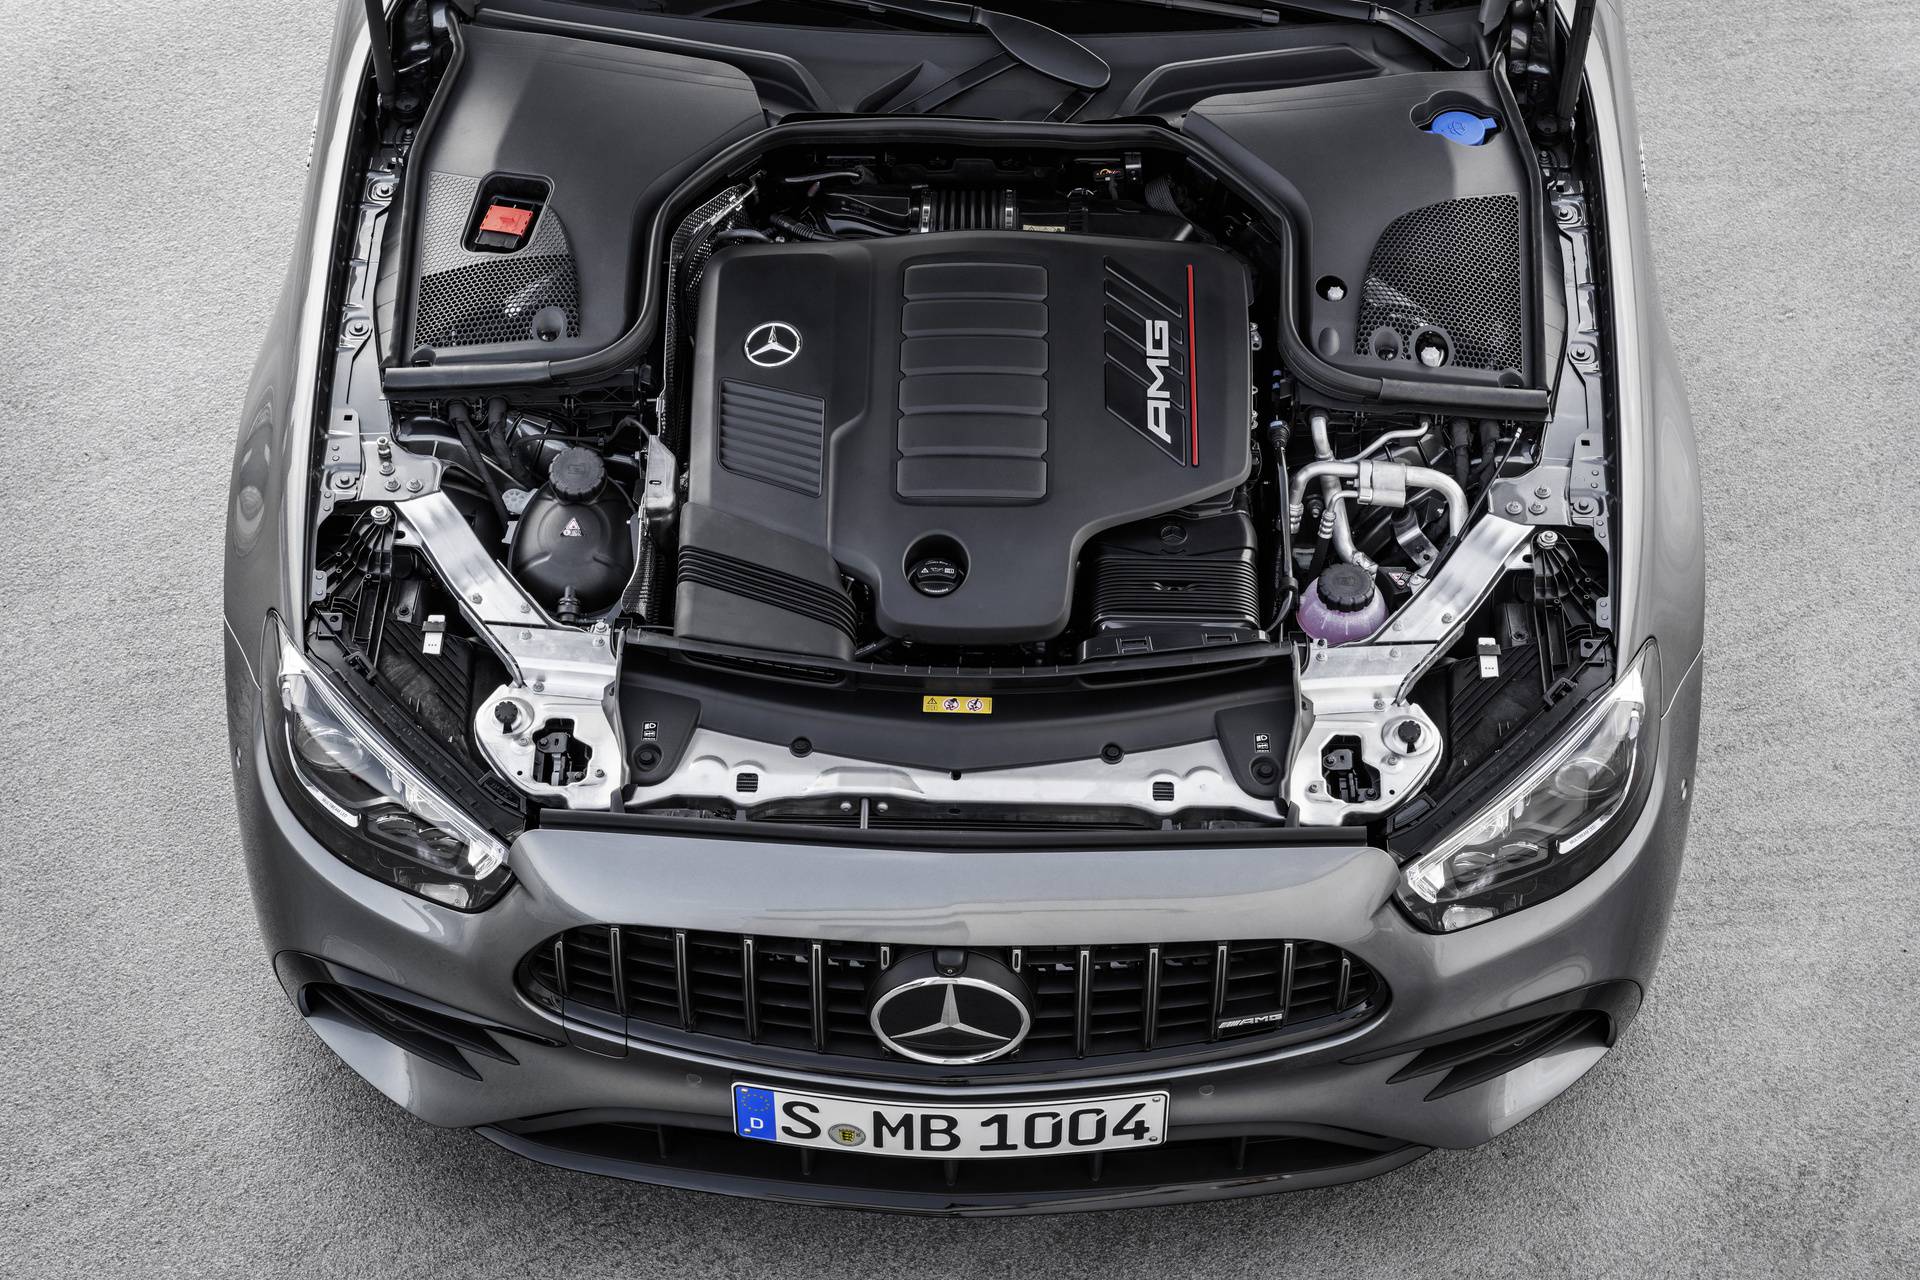 Mercedes-AMG E-Klasse (W213), 2020

Mercedes-AMG E-Klasse (W213), 2020